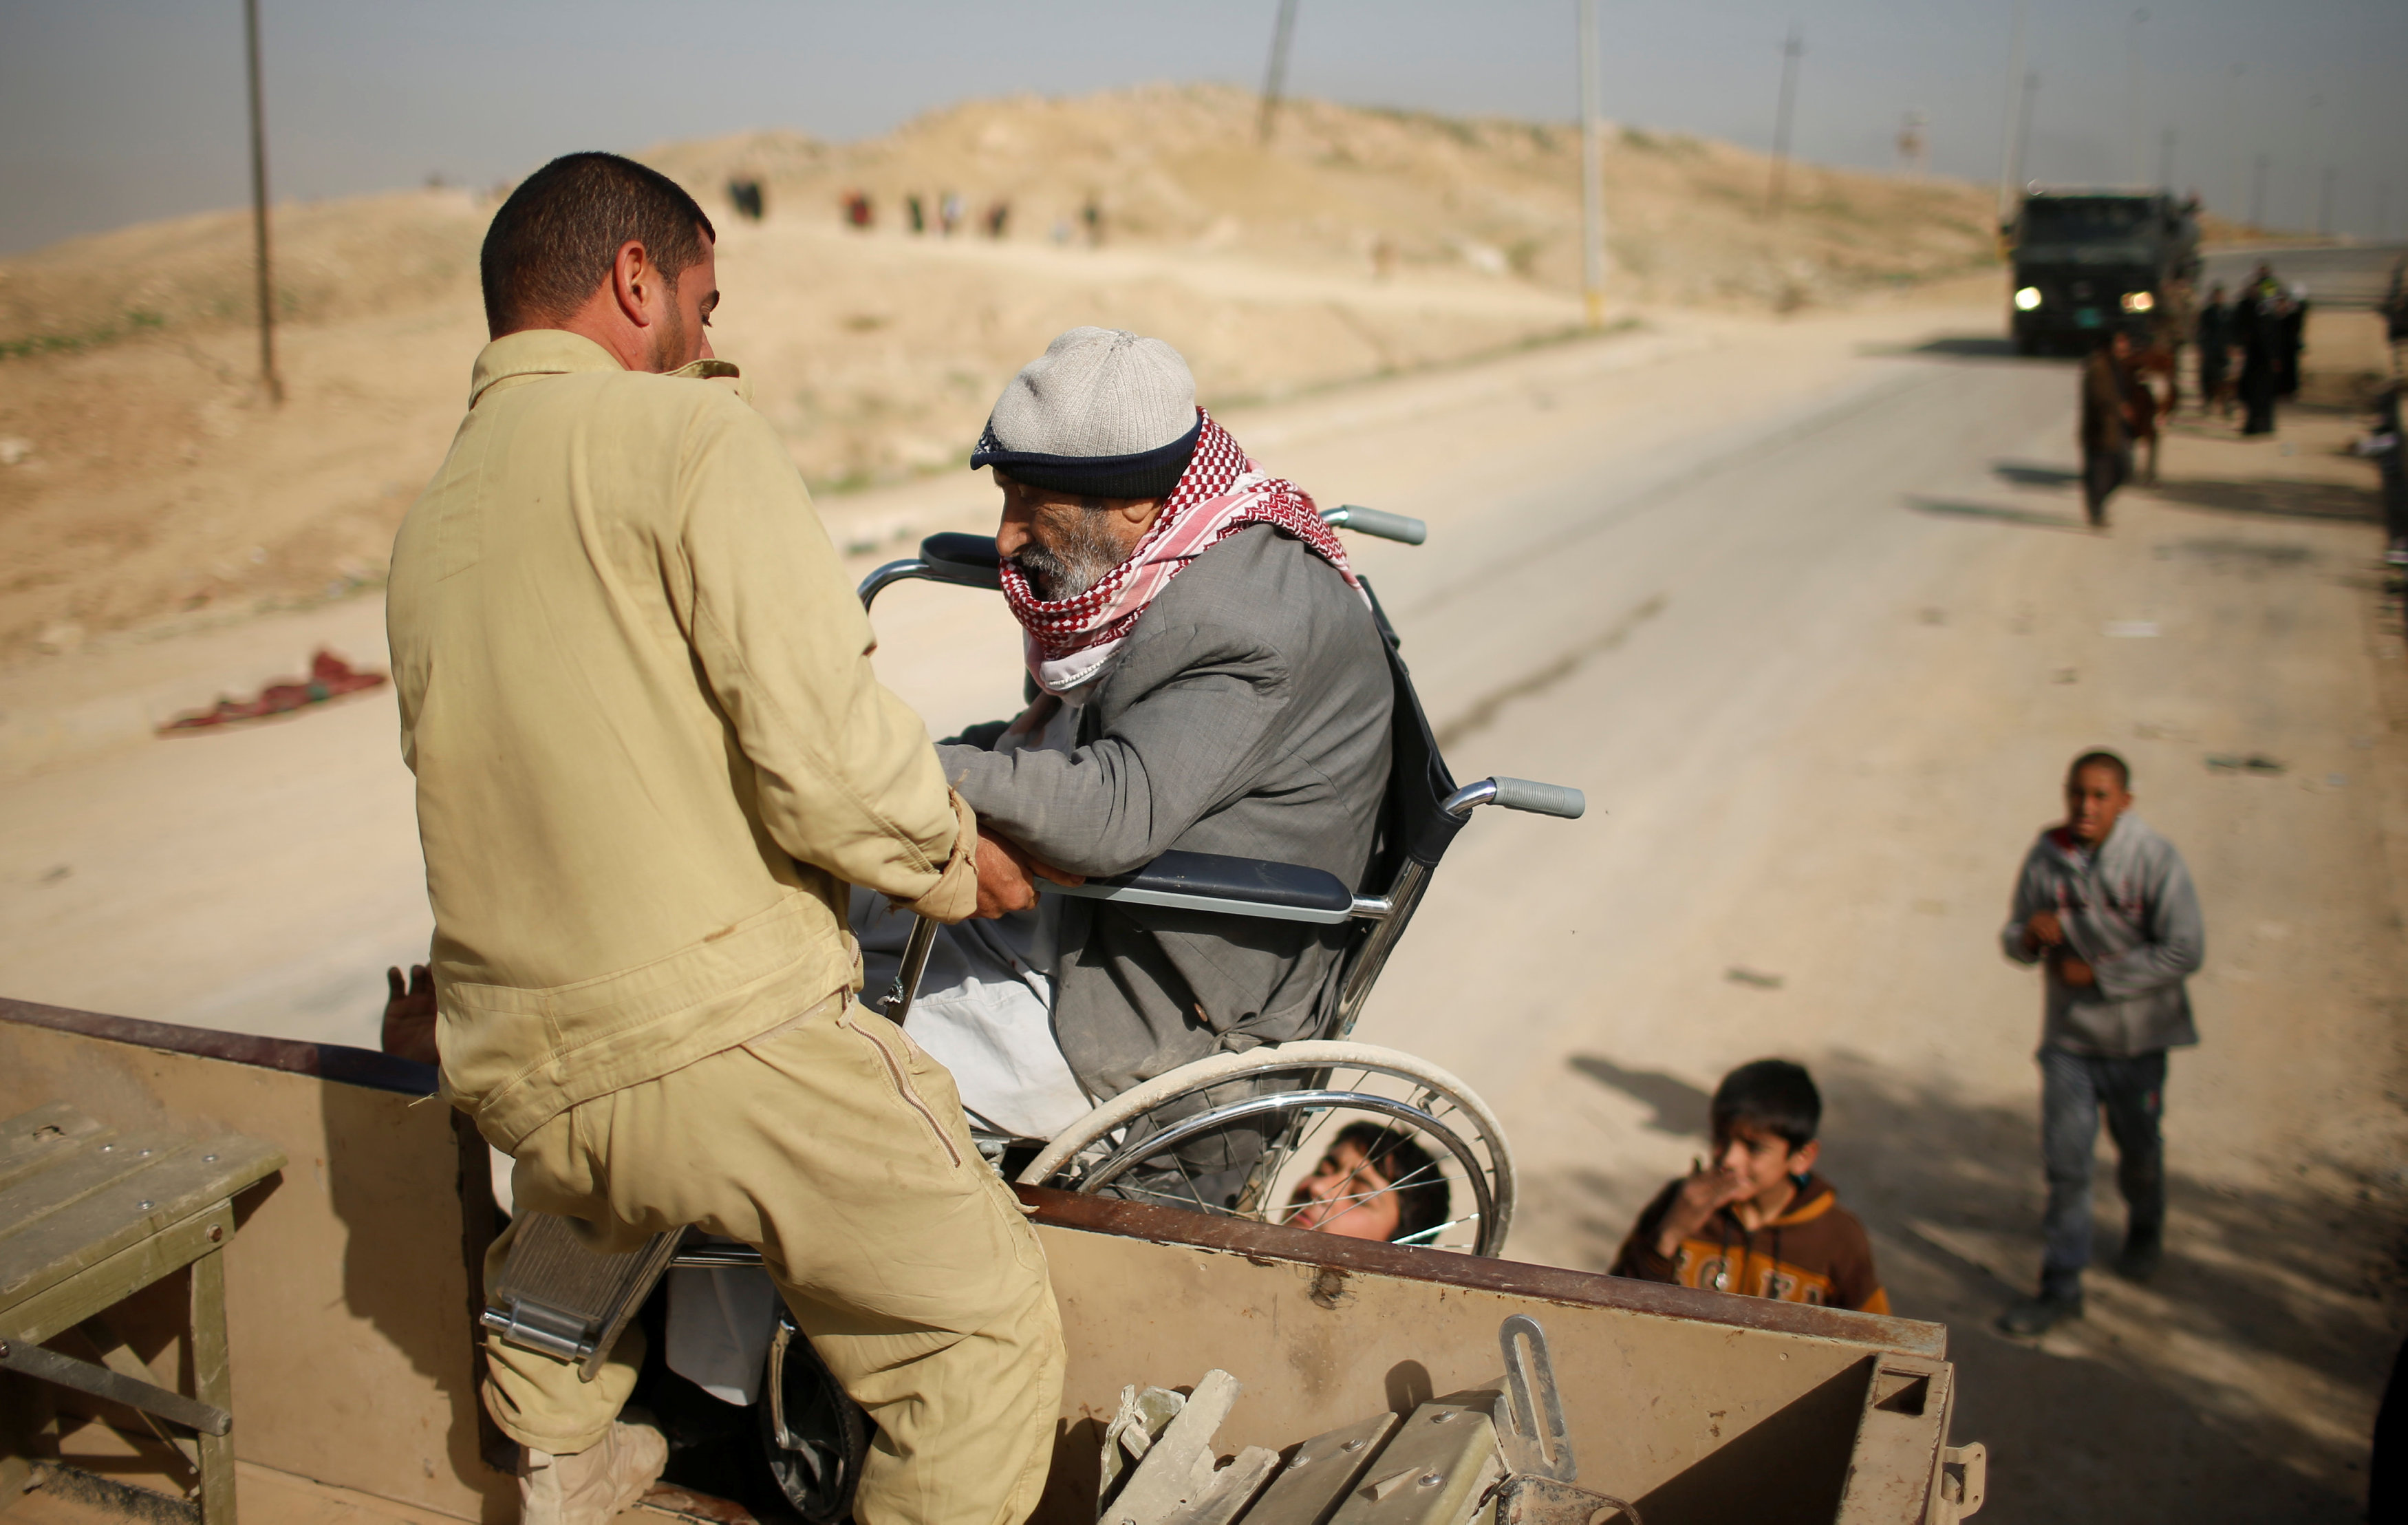 مواطنون يساعدون رجل قعيد على الصعود للسيارة للهرب من داعش